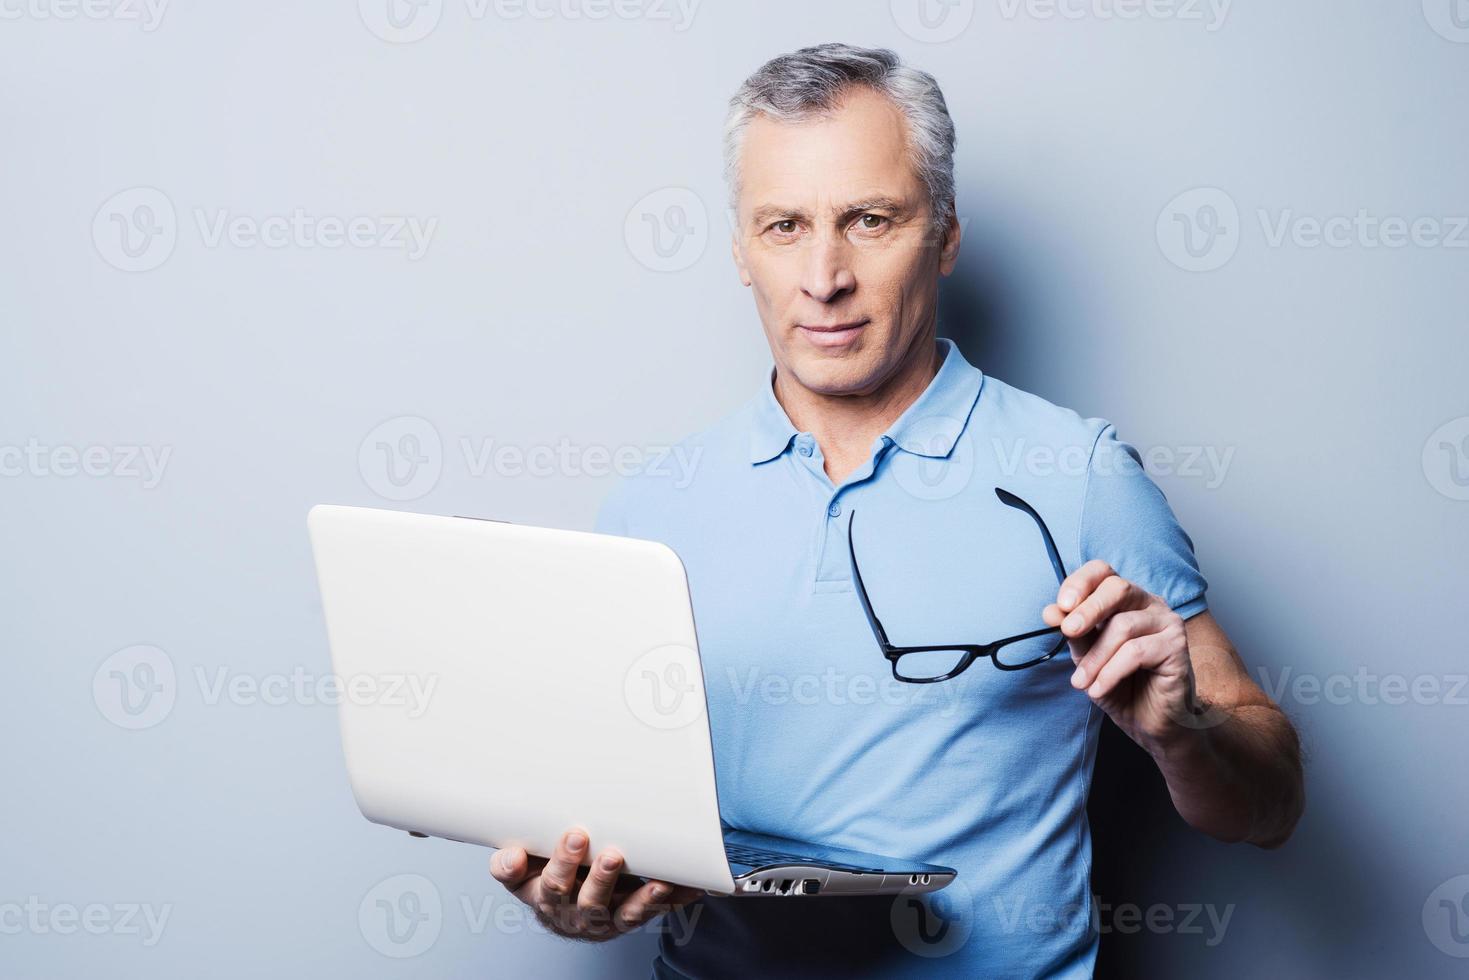 altijd klaar naar helpen jij. vrolijk senior Mens in gewoontjes Holding zijn bril en laptop terwijl staand tegen grijs achtergrond foto